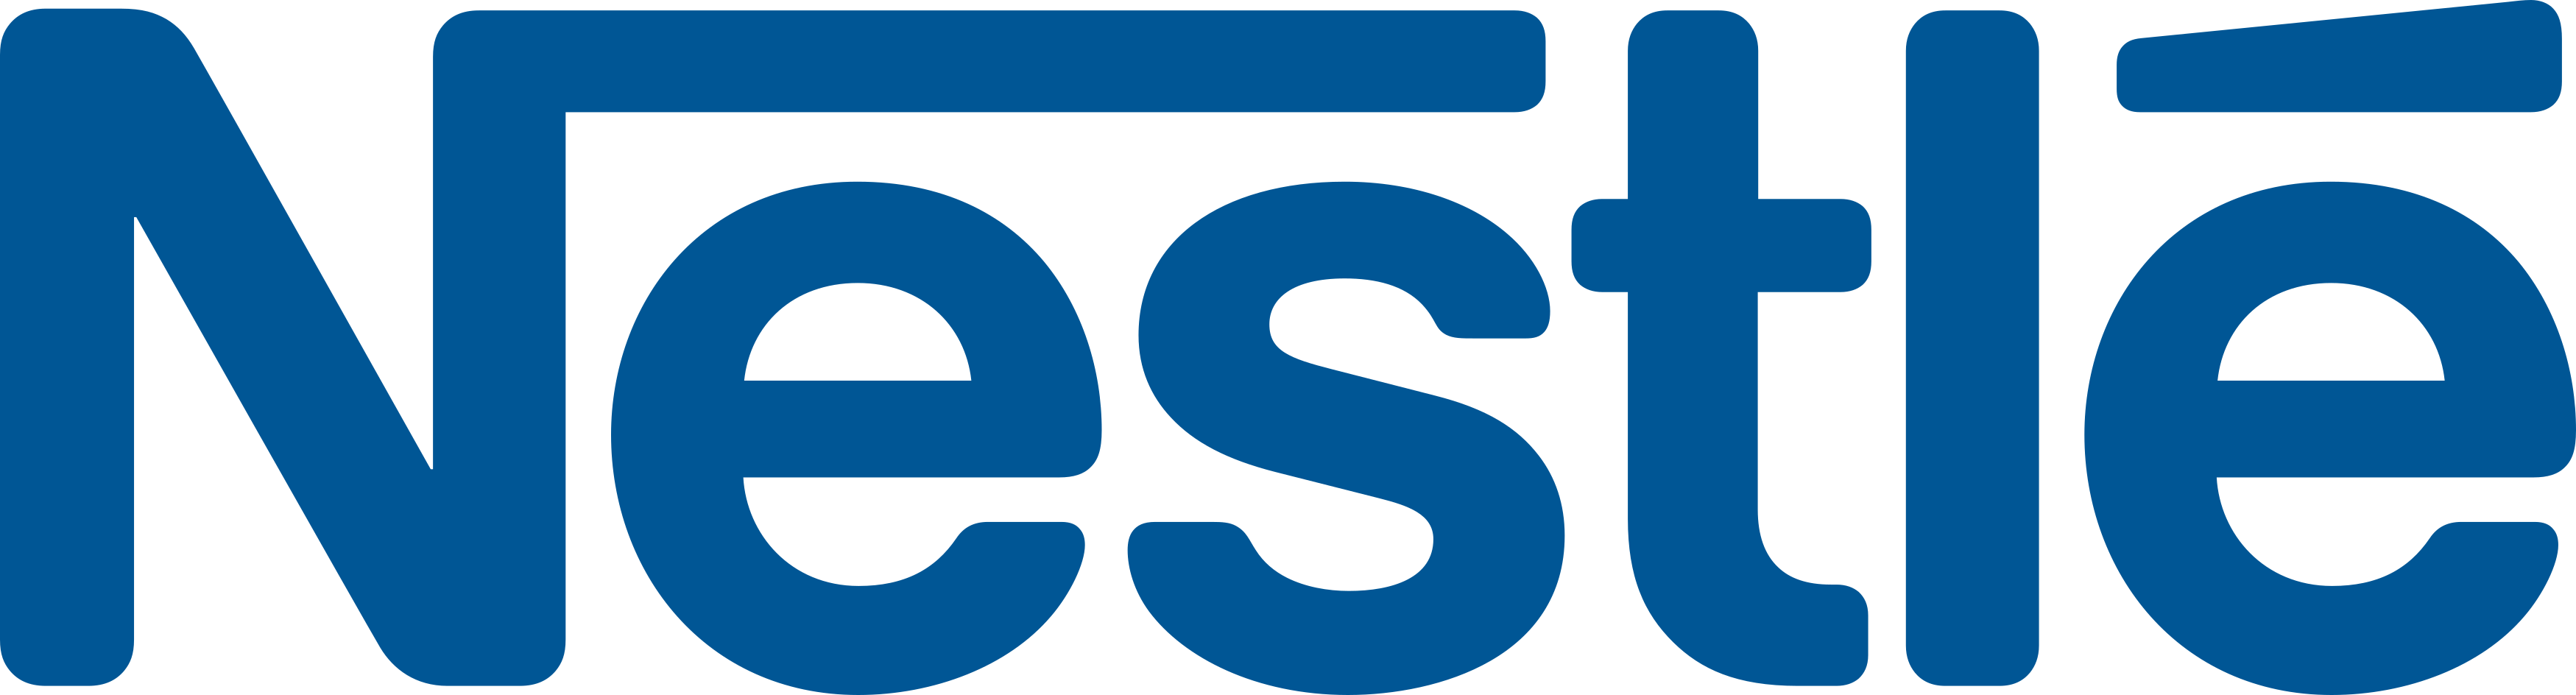 Nestlé logo PNG imagen de fondo